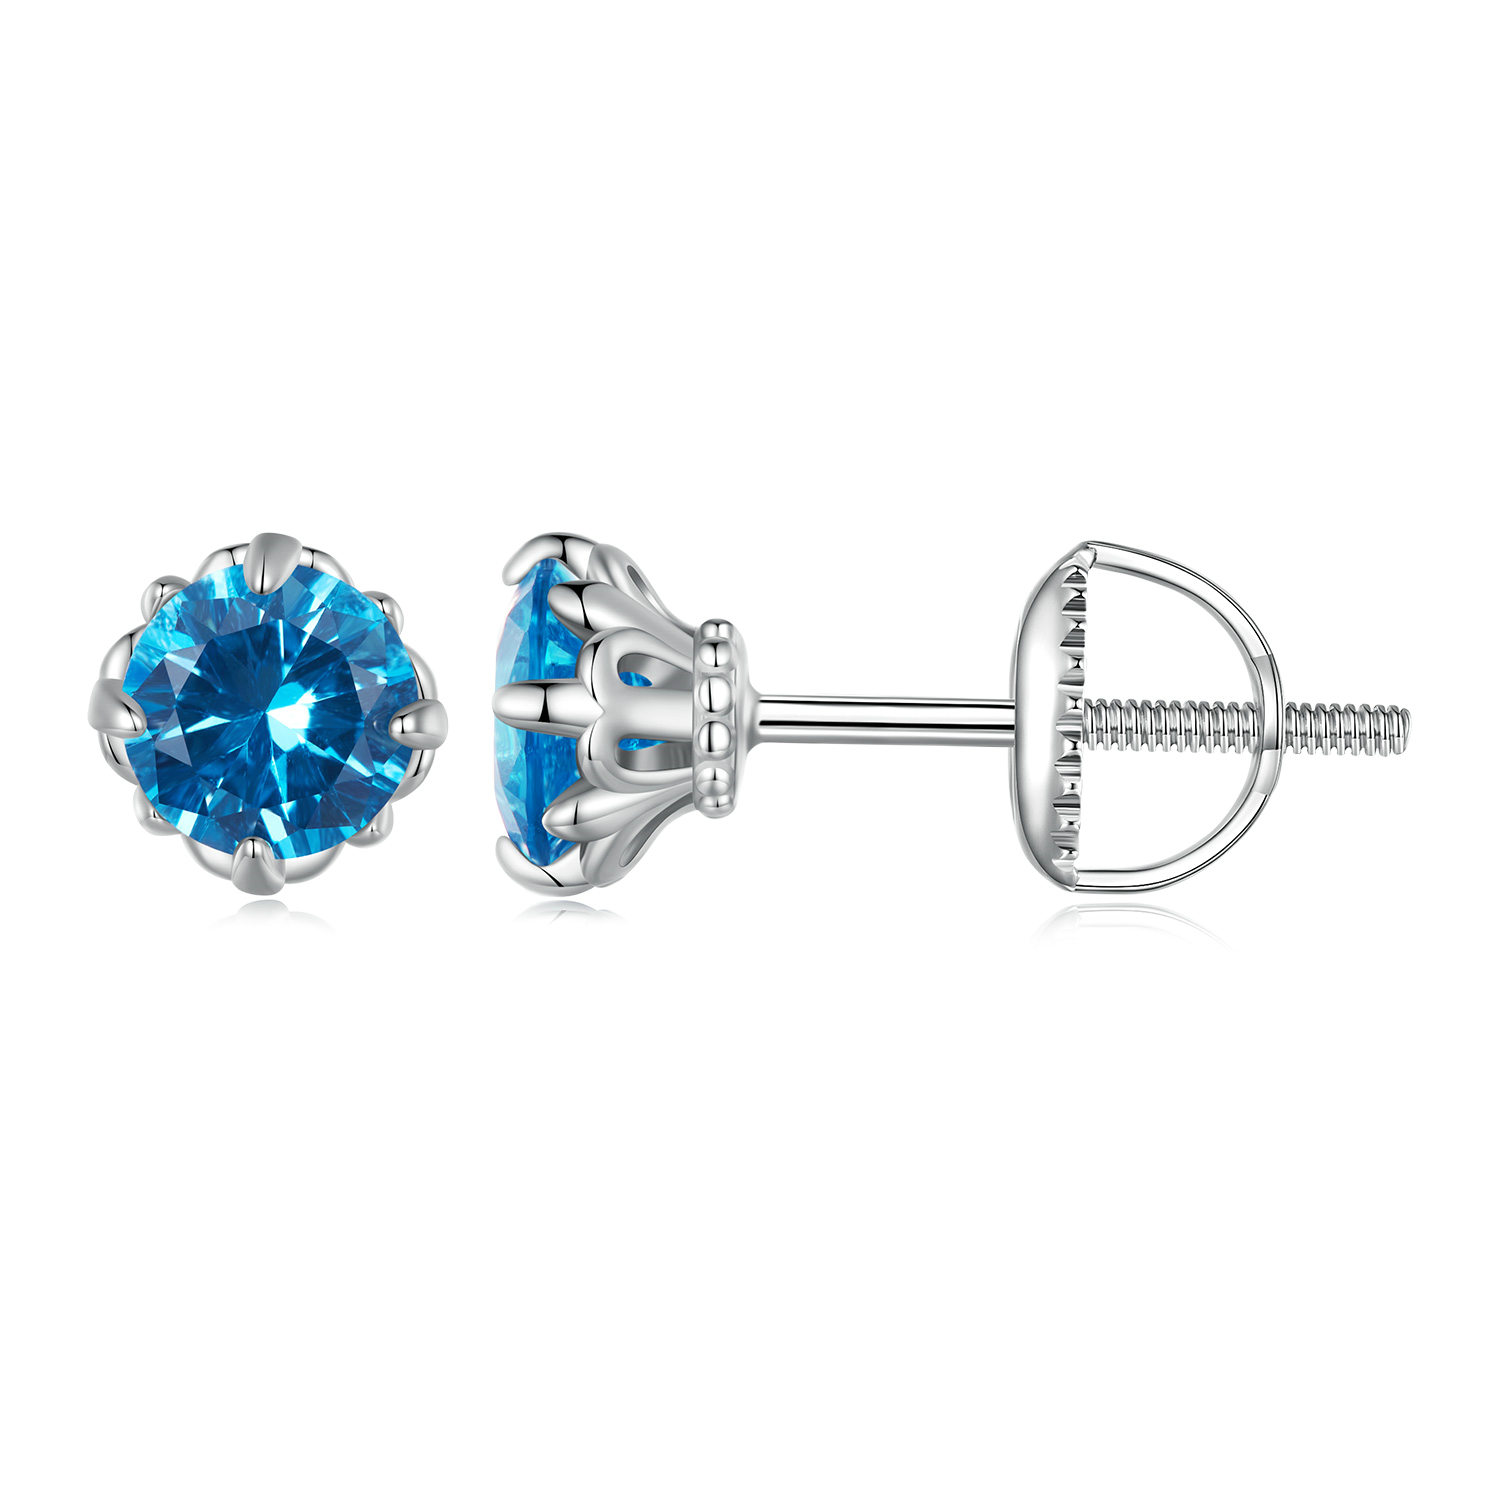 pandora style blue spinel stud earrings bse831 bu